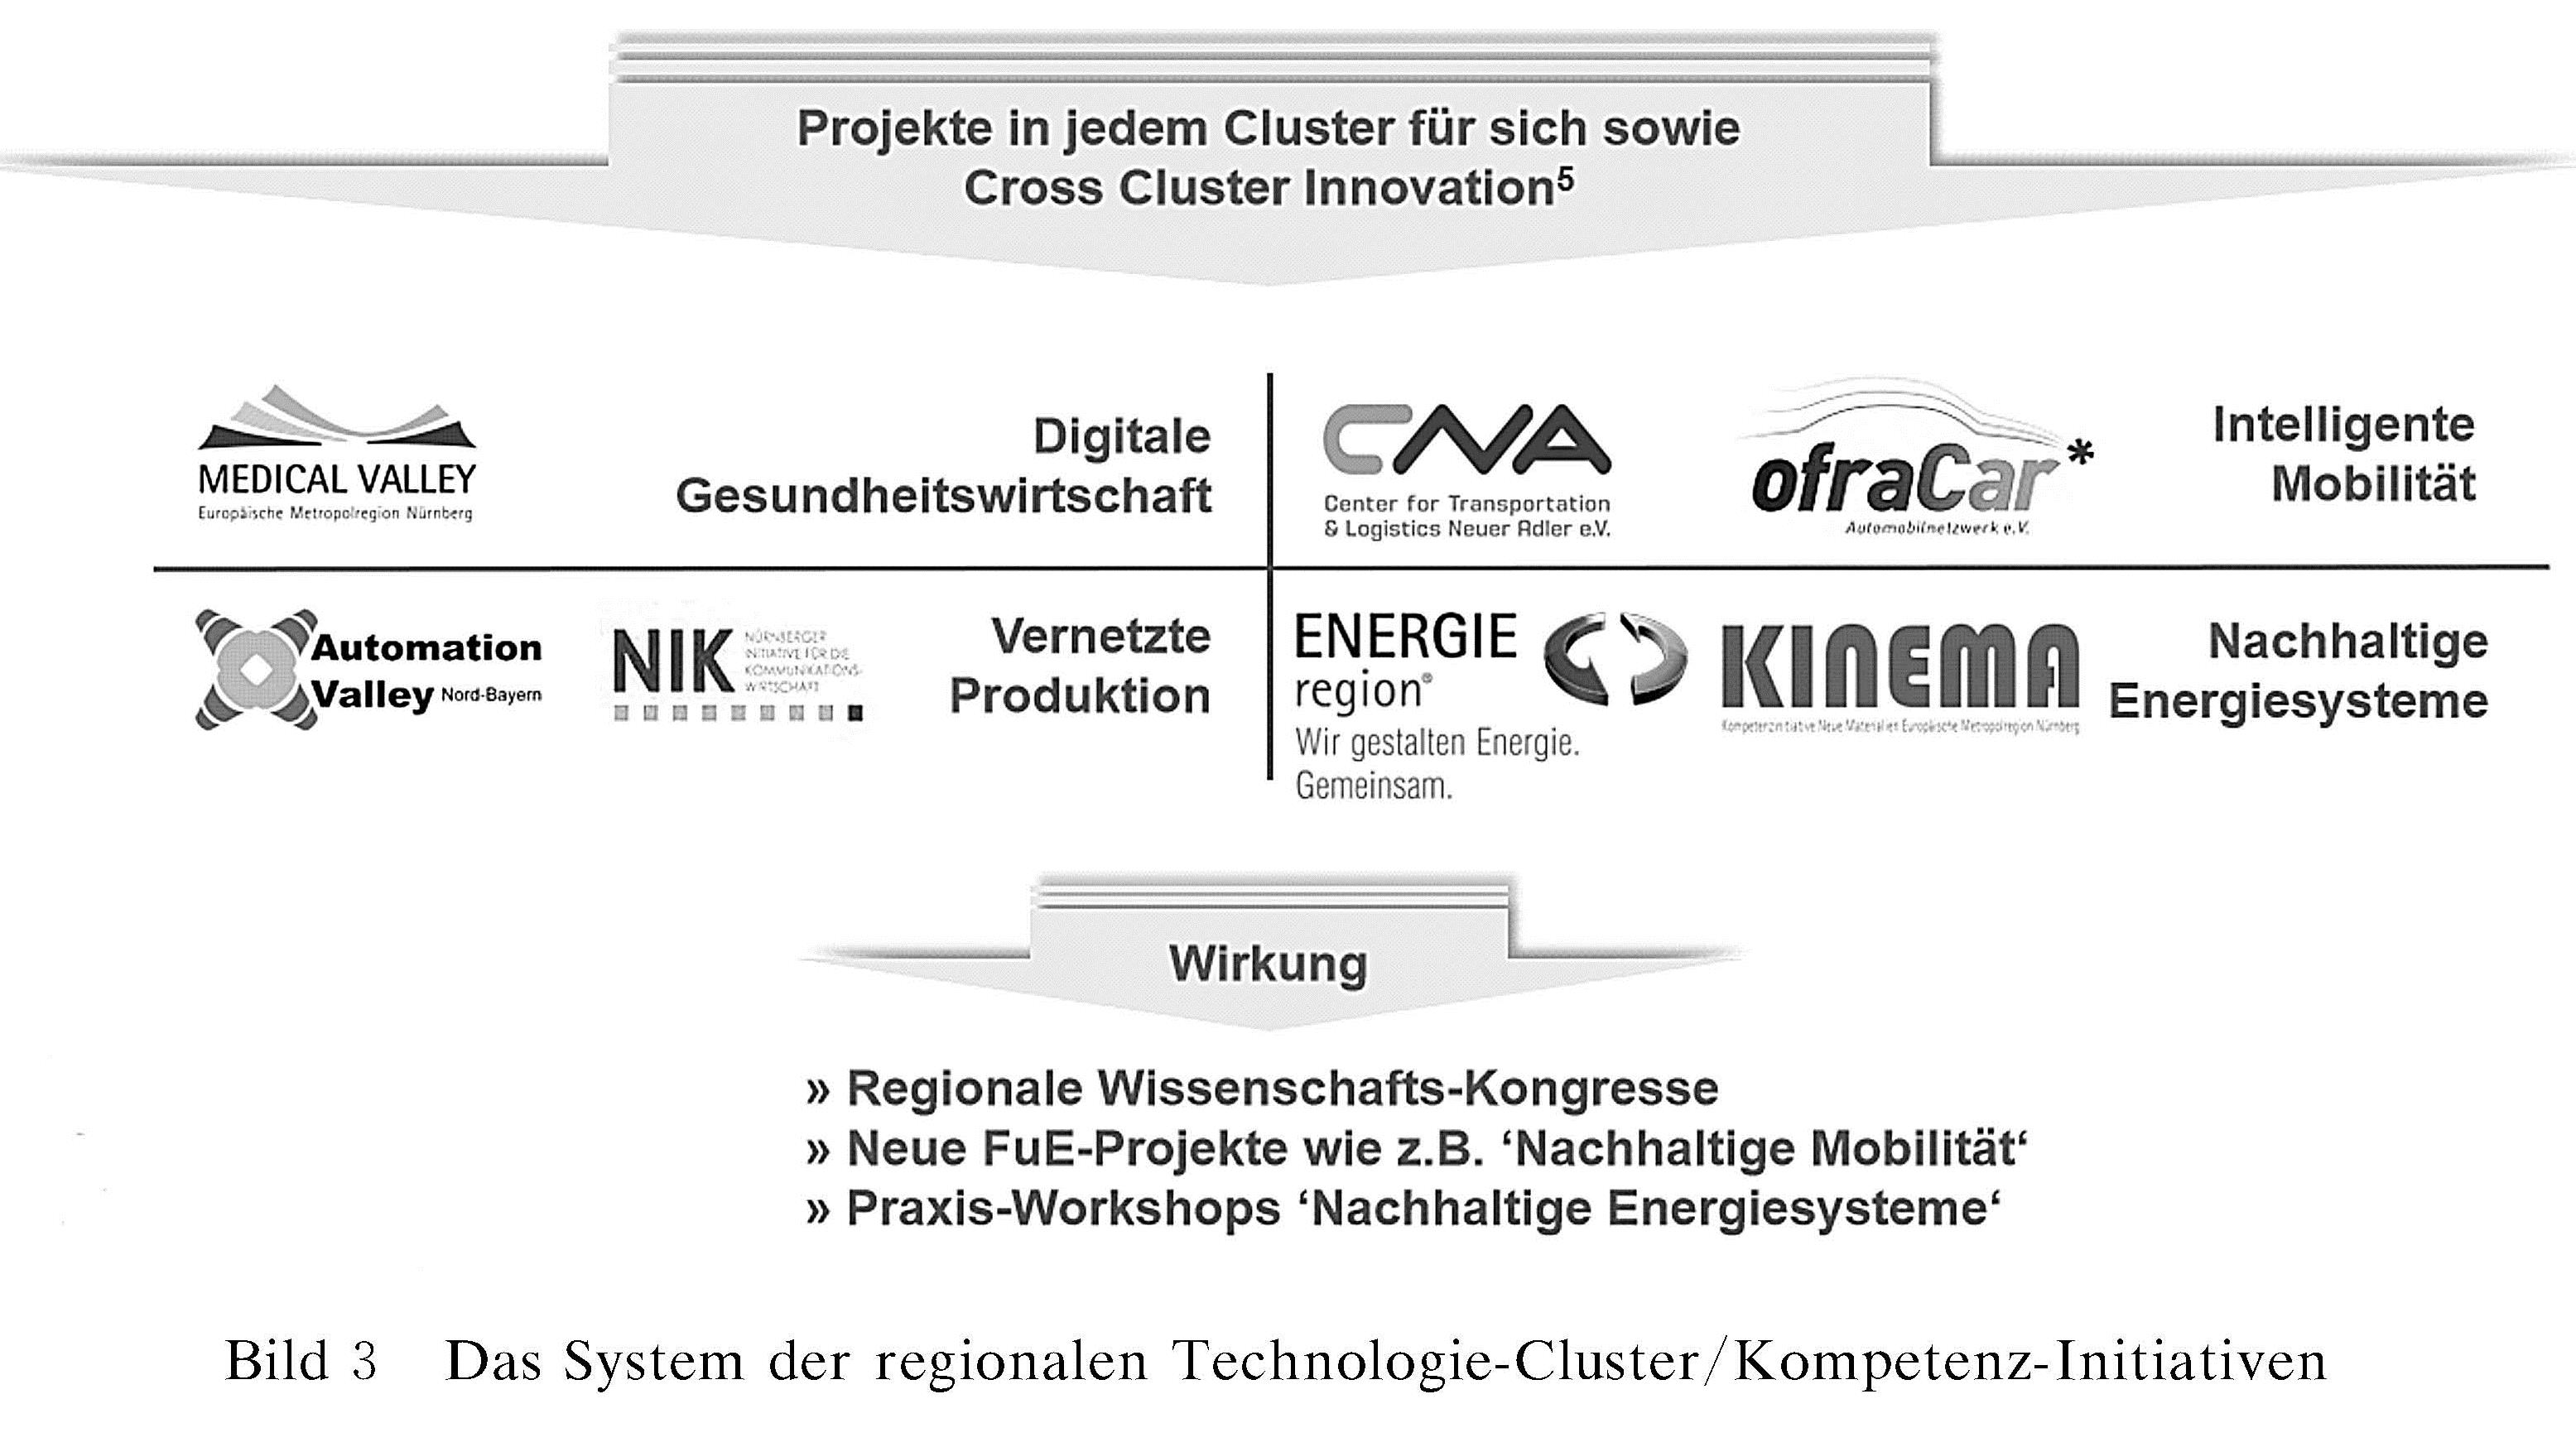 图3 Das System der regionalen Technologie-Cluster/Kompetenz-Initiativen